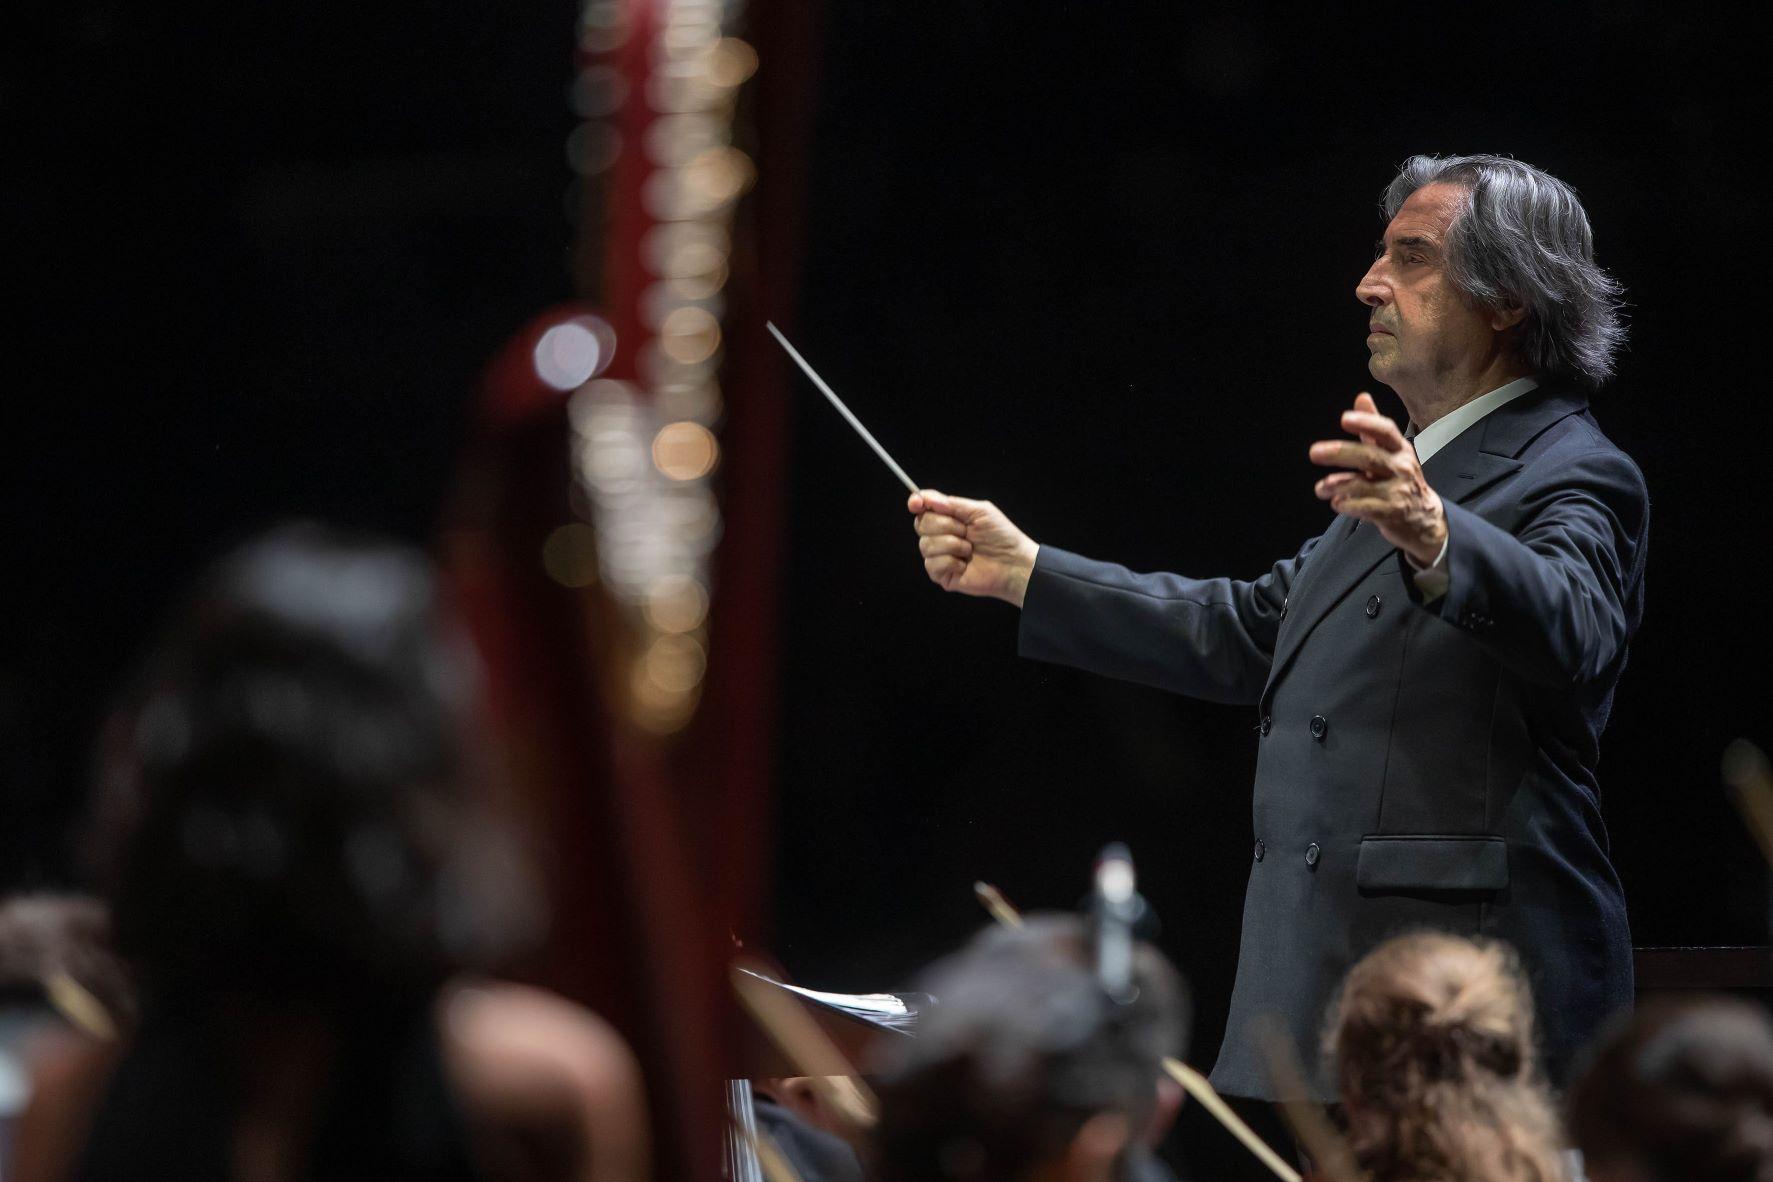 Concerto Orchestra Giovanile “Luigi Cherubini”- Direttore Riccardo Muti - Palazzo Mauro de André (foto Zani-Casadio)